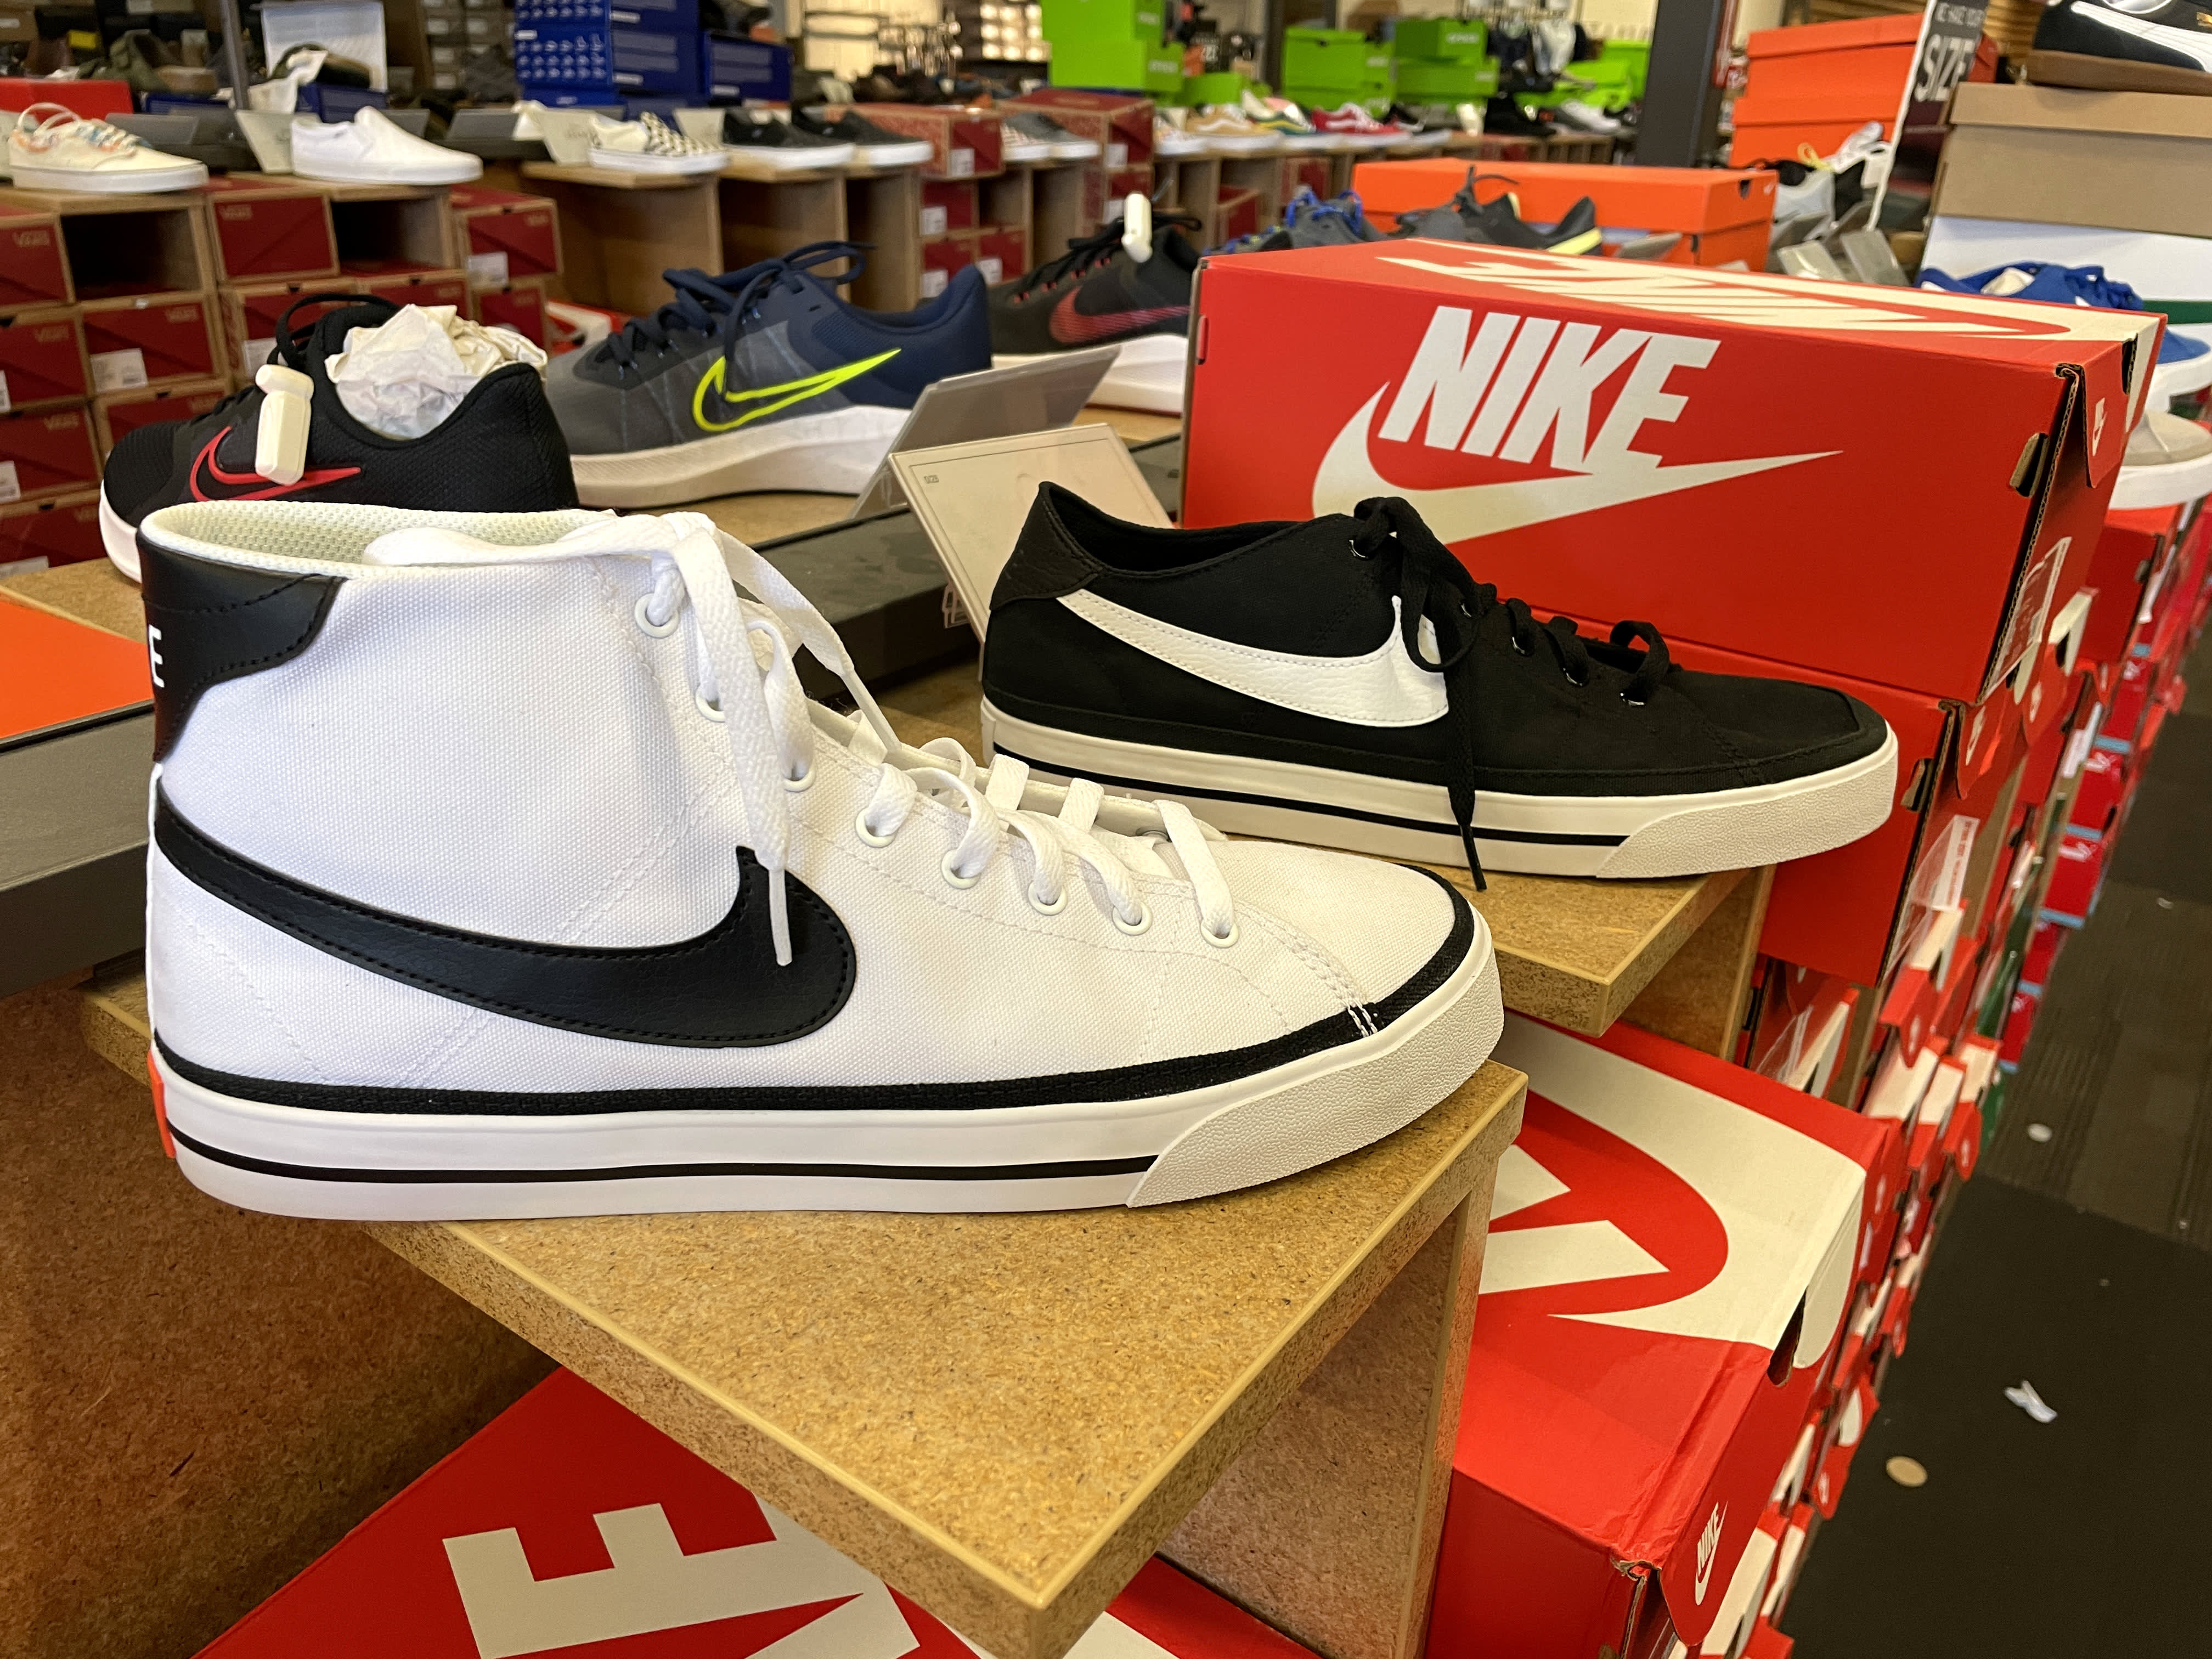 Bergantín elección Hasta aquí Nike cries foul over virtual shoes, suing retailer that sells sneaker NFTs